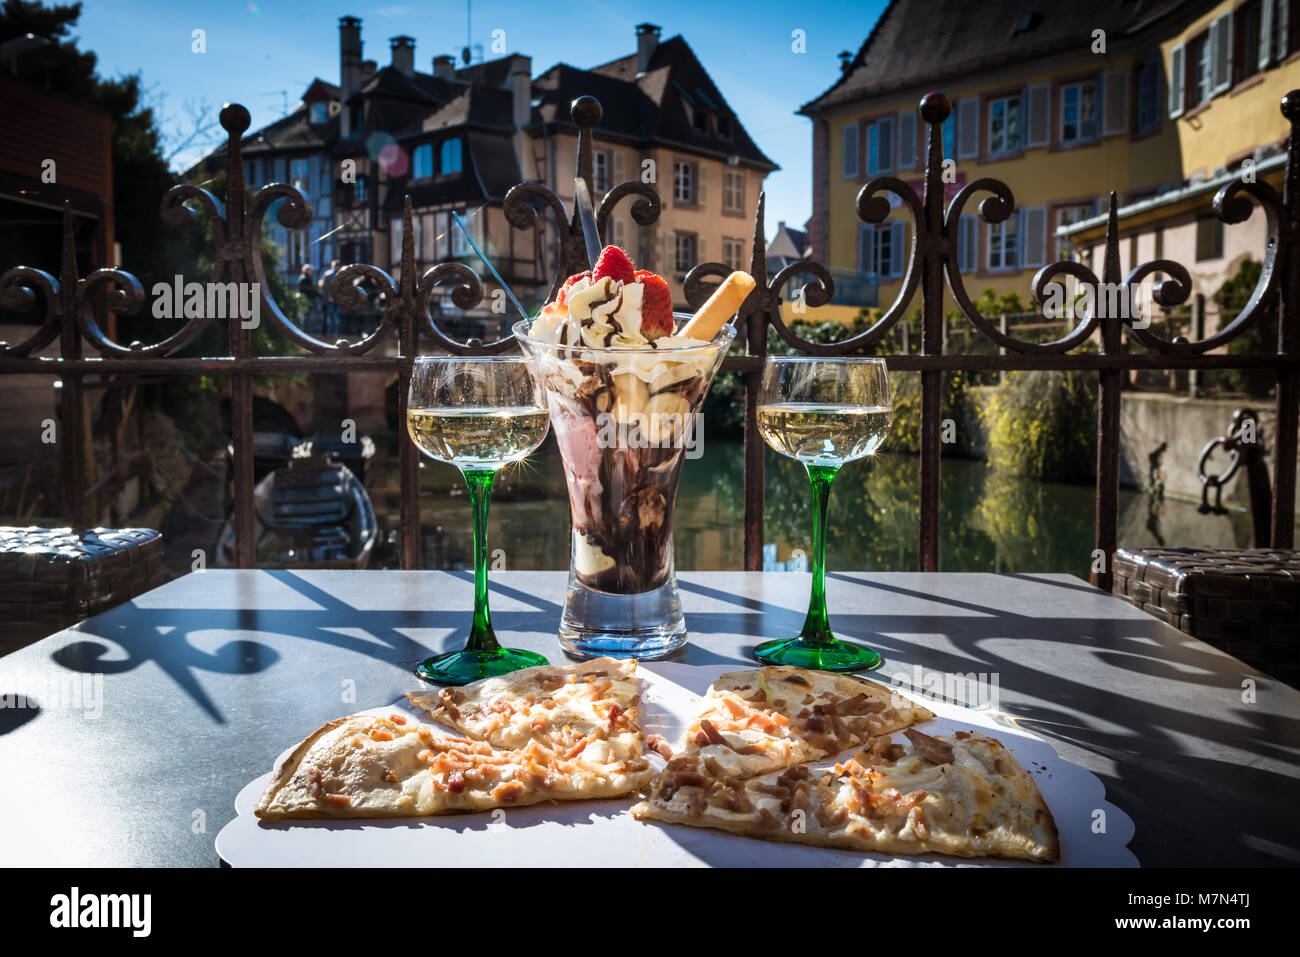 Traditionelle lokale Pizza mit Wein und Dessert in einem Cafe im Freien. Essen und Wein am Tisch auf der Terrasse mit schöner Aussicht auf den Fluss. Jahrgang Gebäude Stockfoto